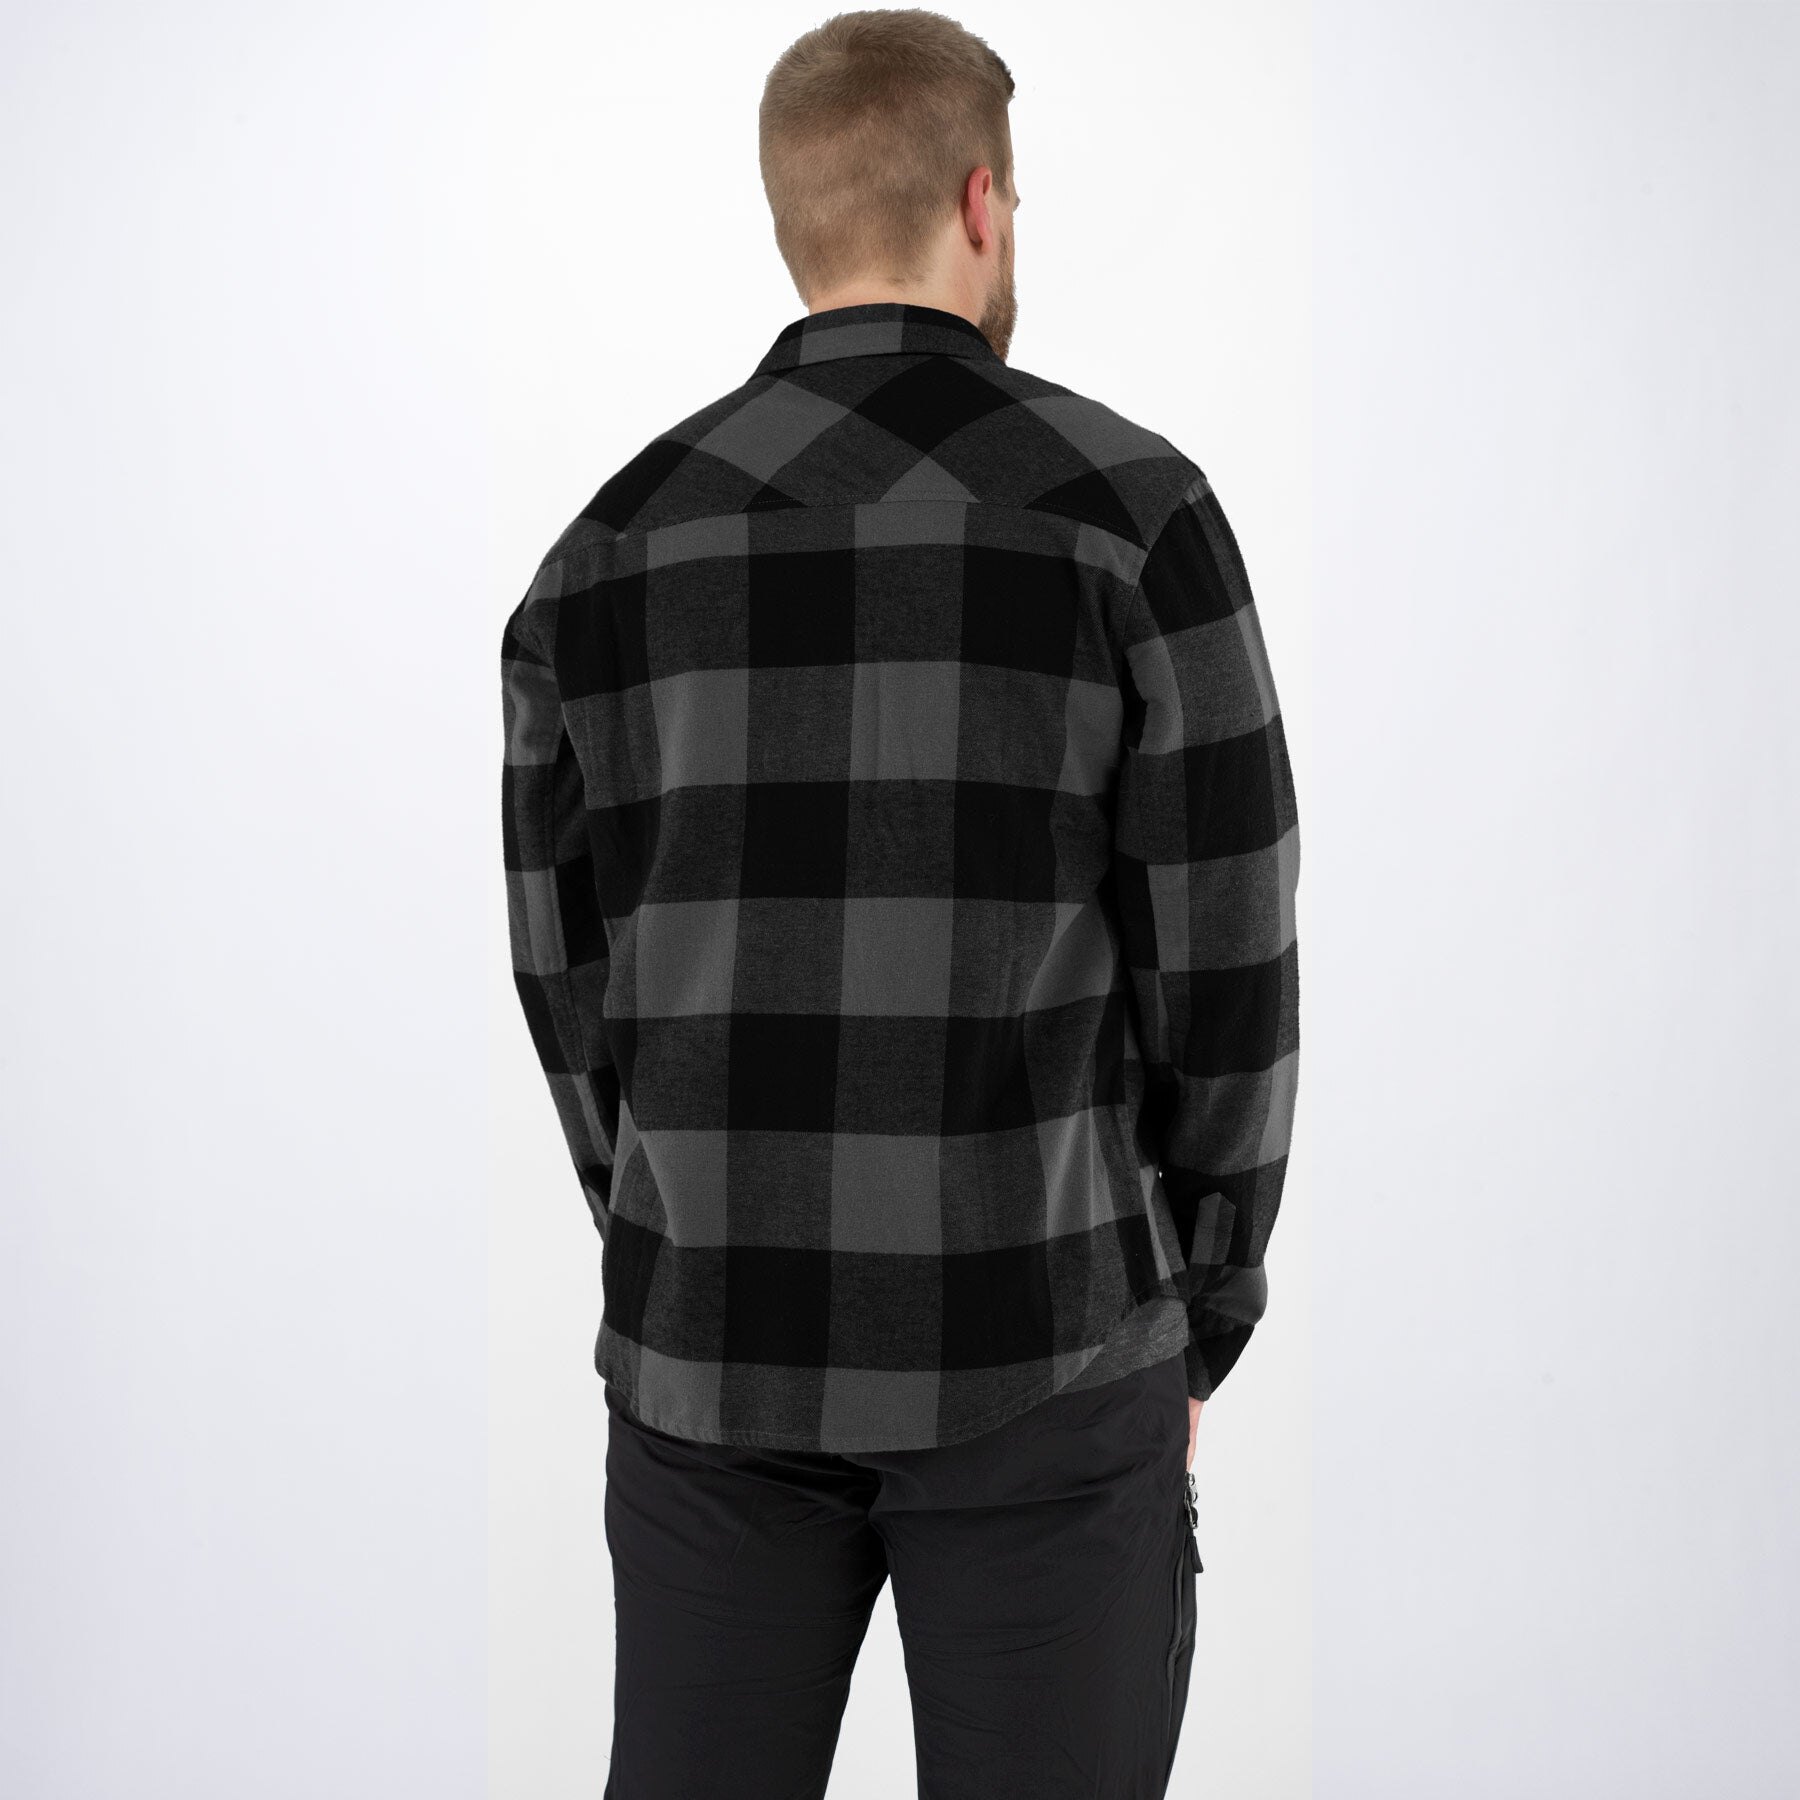 Men's Timber Flannel Shirt